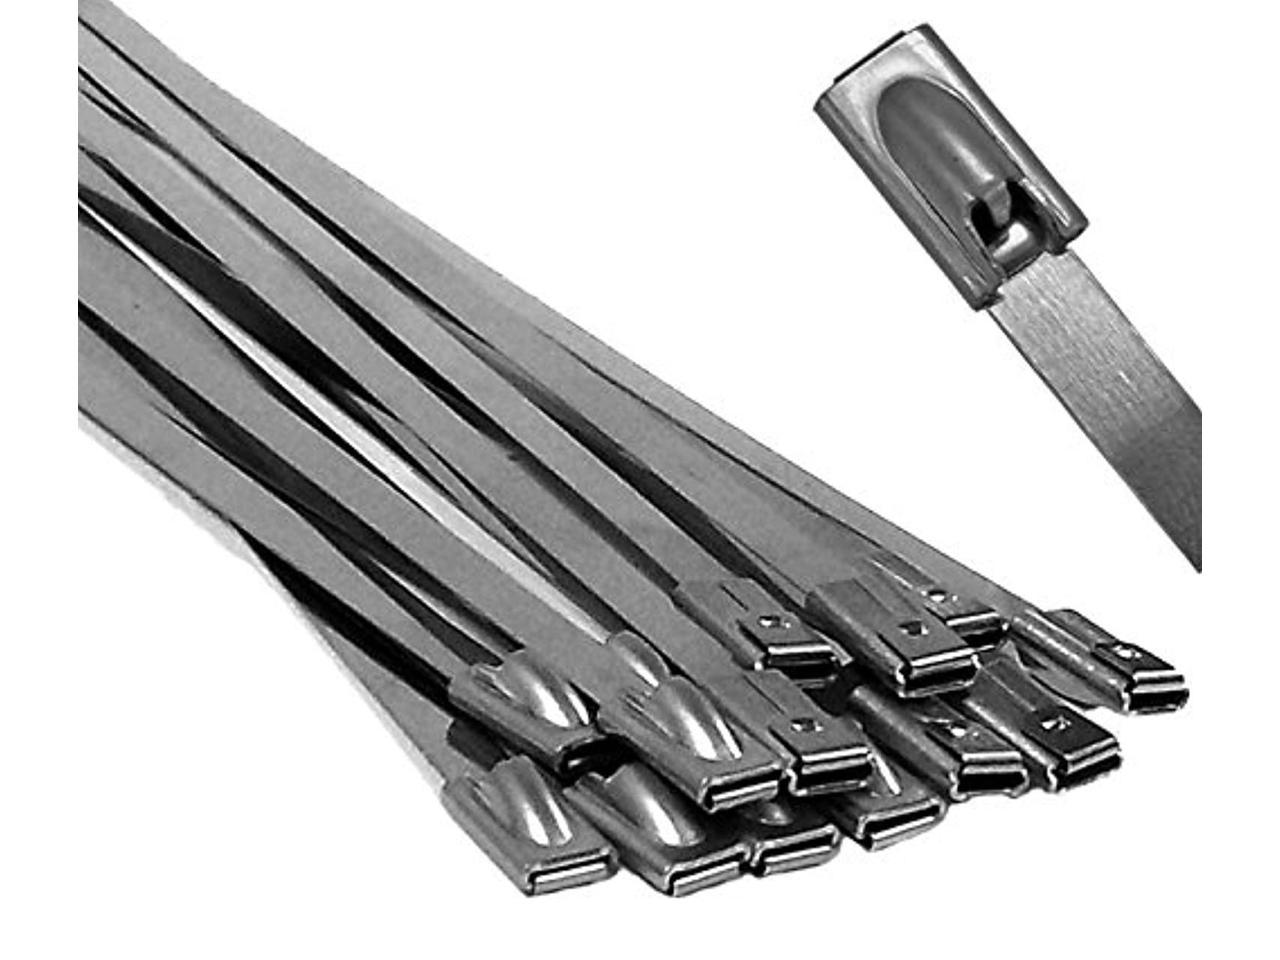 Stainless Steel Metal Cable Ties Zip Ties 150-680mm Sizes 